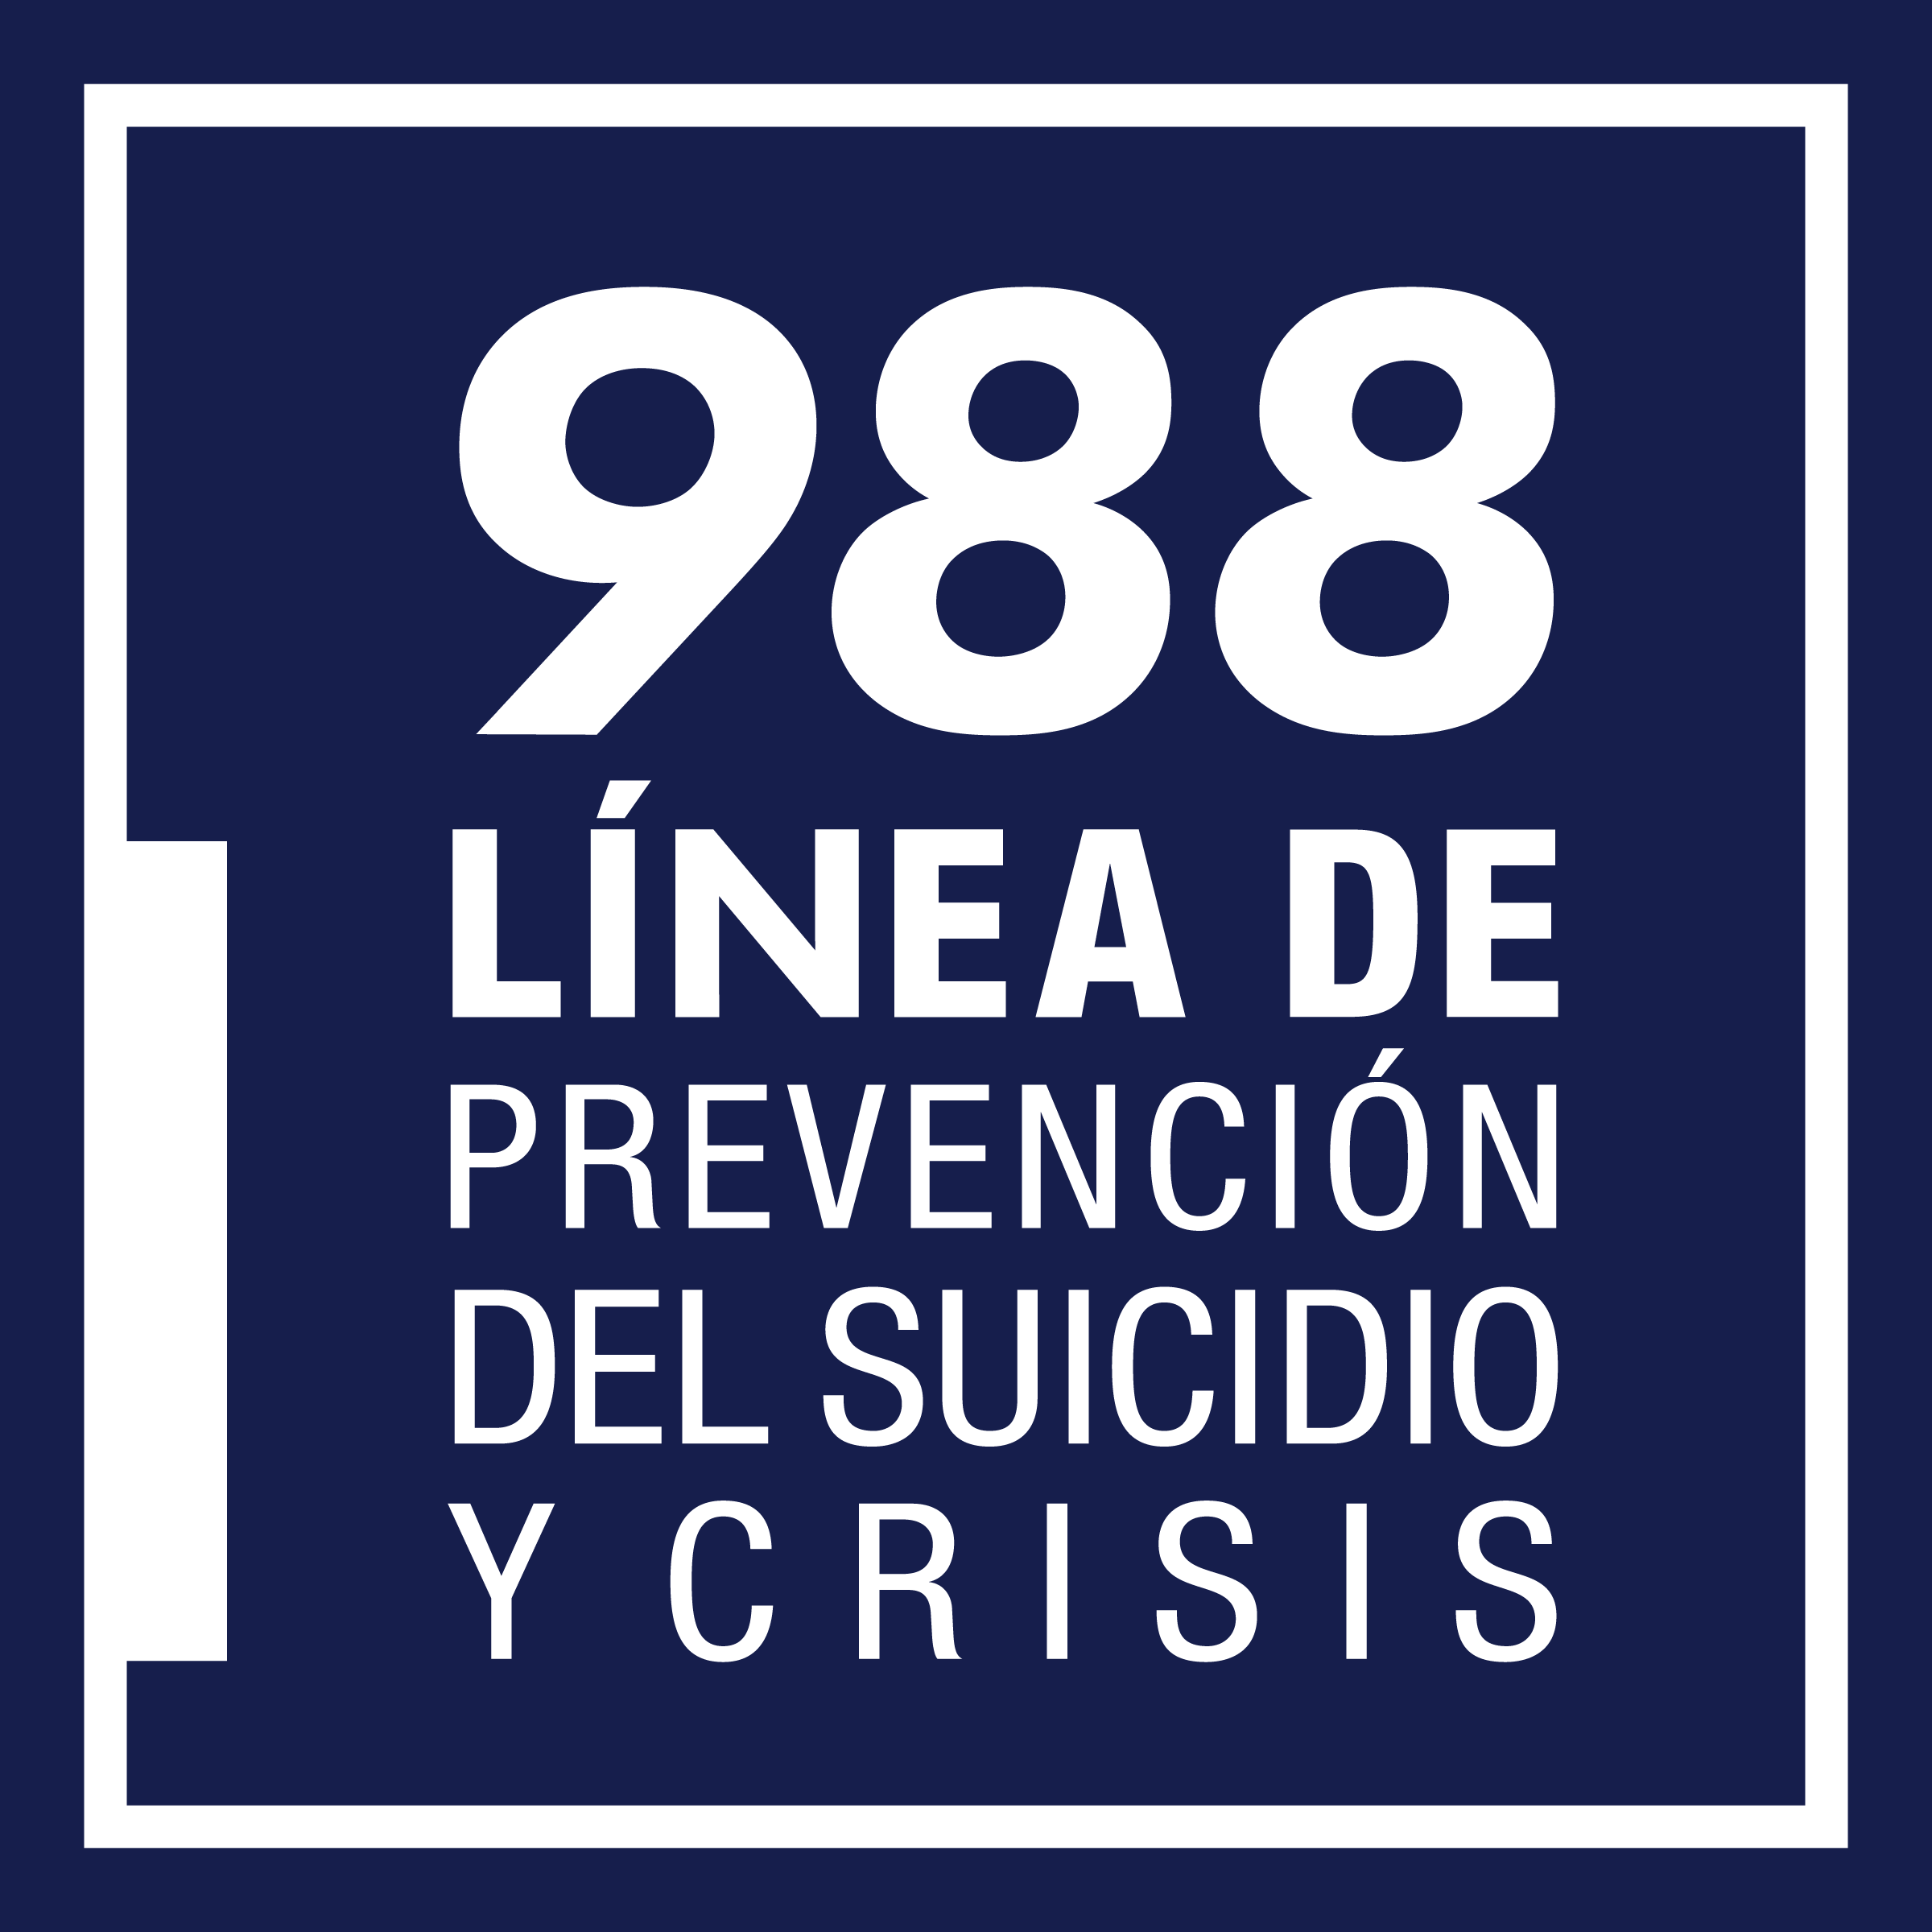 988 Linea de prevencion del suicidio y crisis on blue background